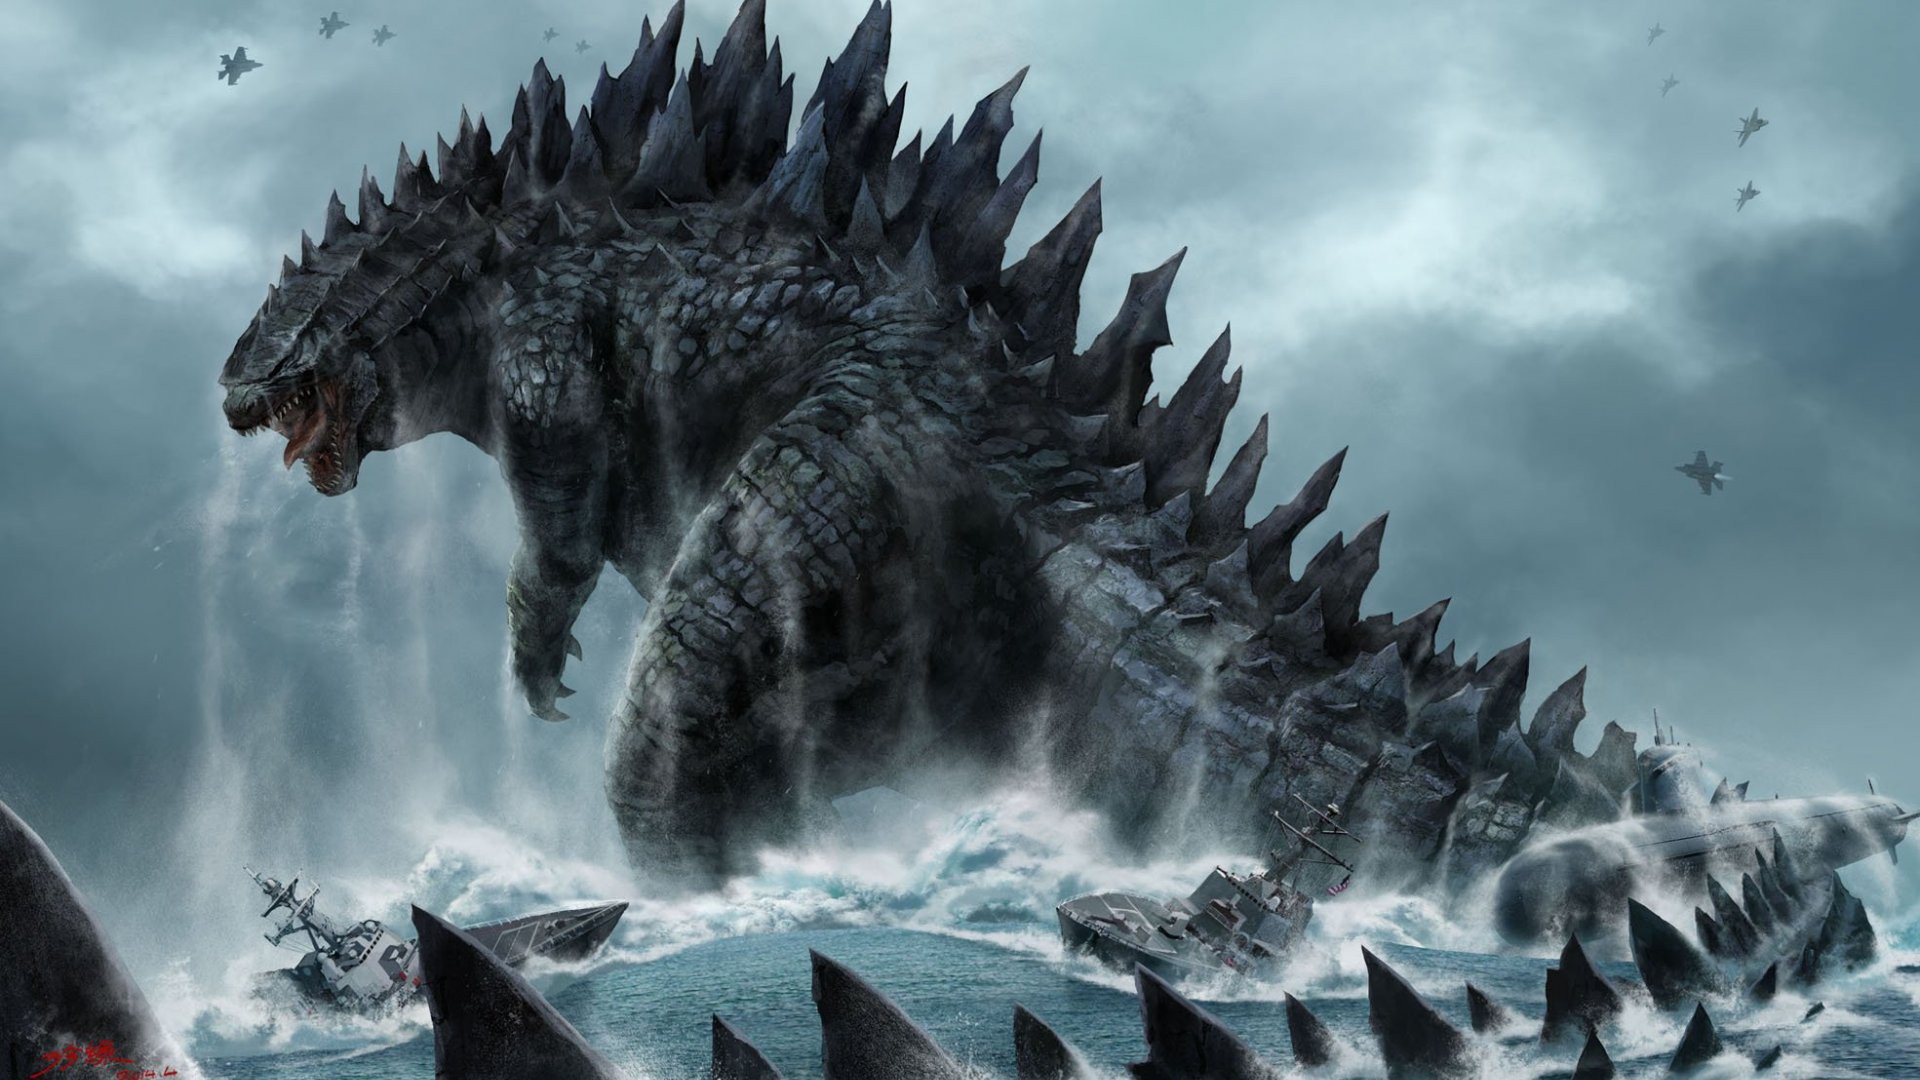 Godzilla - siêu quái vật. Bạn đã từng xem phim kinh điển về siêu quái vật này chưa? Hãy để những hình ảnh trong phim đến và sở hữu cho mình những hình nền siêu quái vật đầy uy lực trên màn hình máy tính của mình. Hãy truy cập vào trang web của chúng tôi để lựa chọn những hình nền độc đáo về siêu quái vật Godzilla.